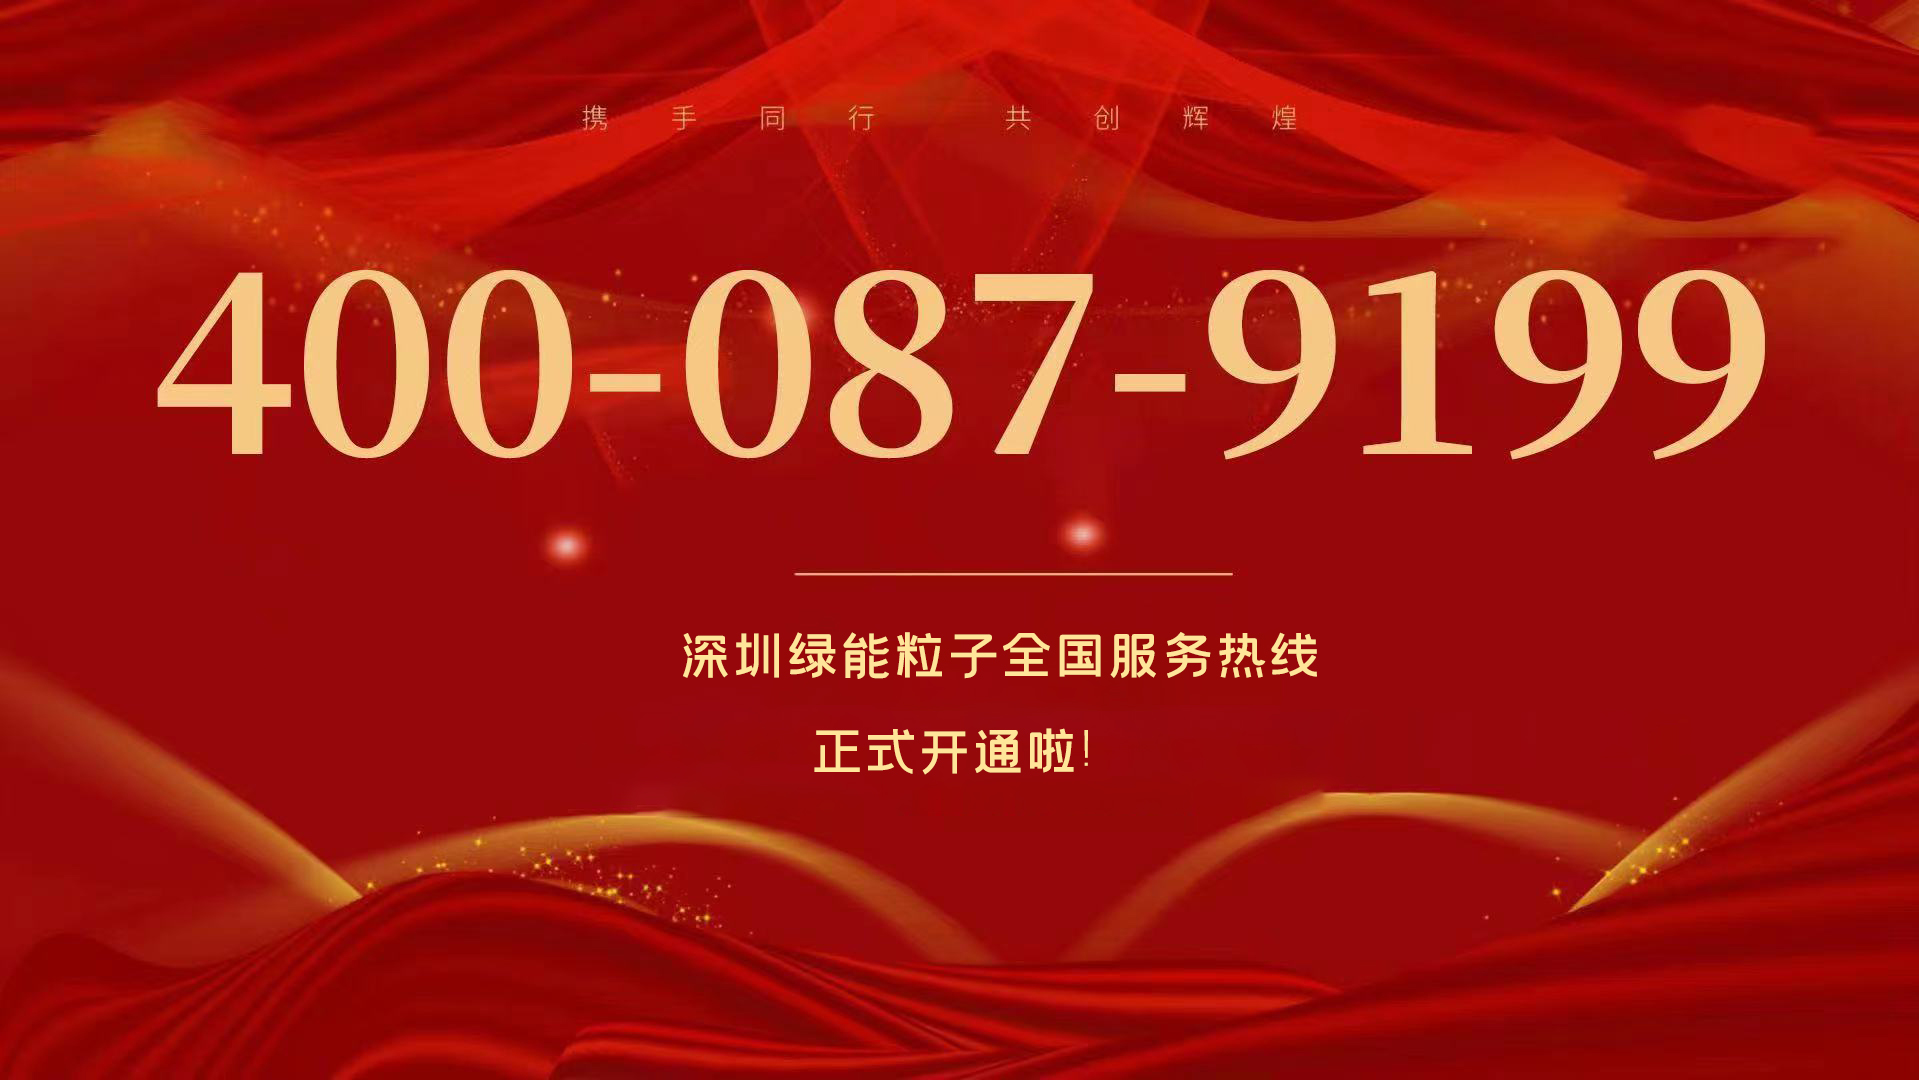  深圳尊龙凯时人生就是博天下效劳热线400-087-9199正式开通啦！  